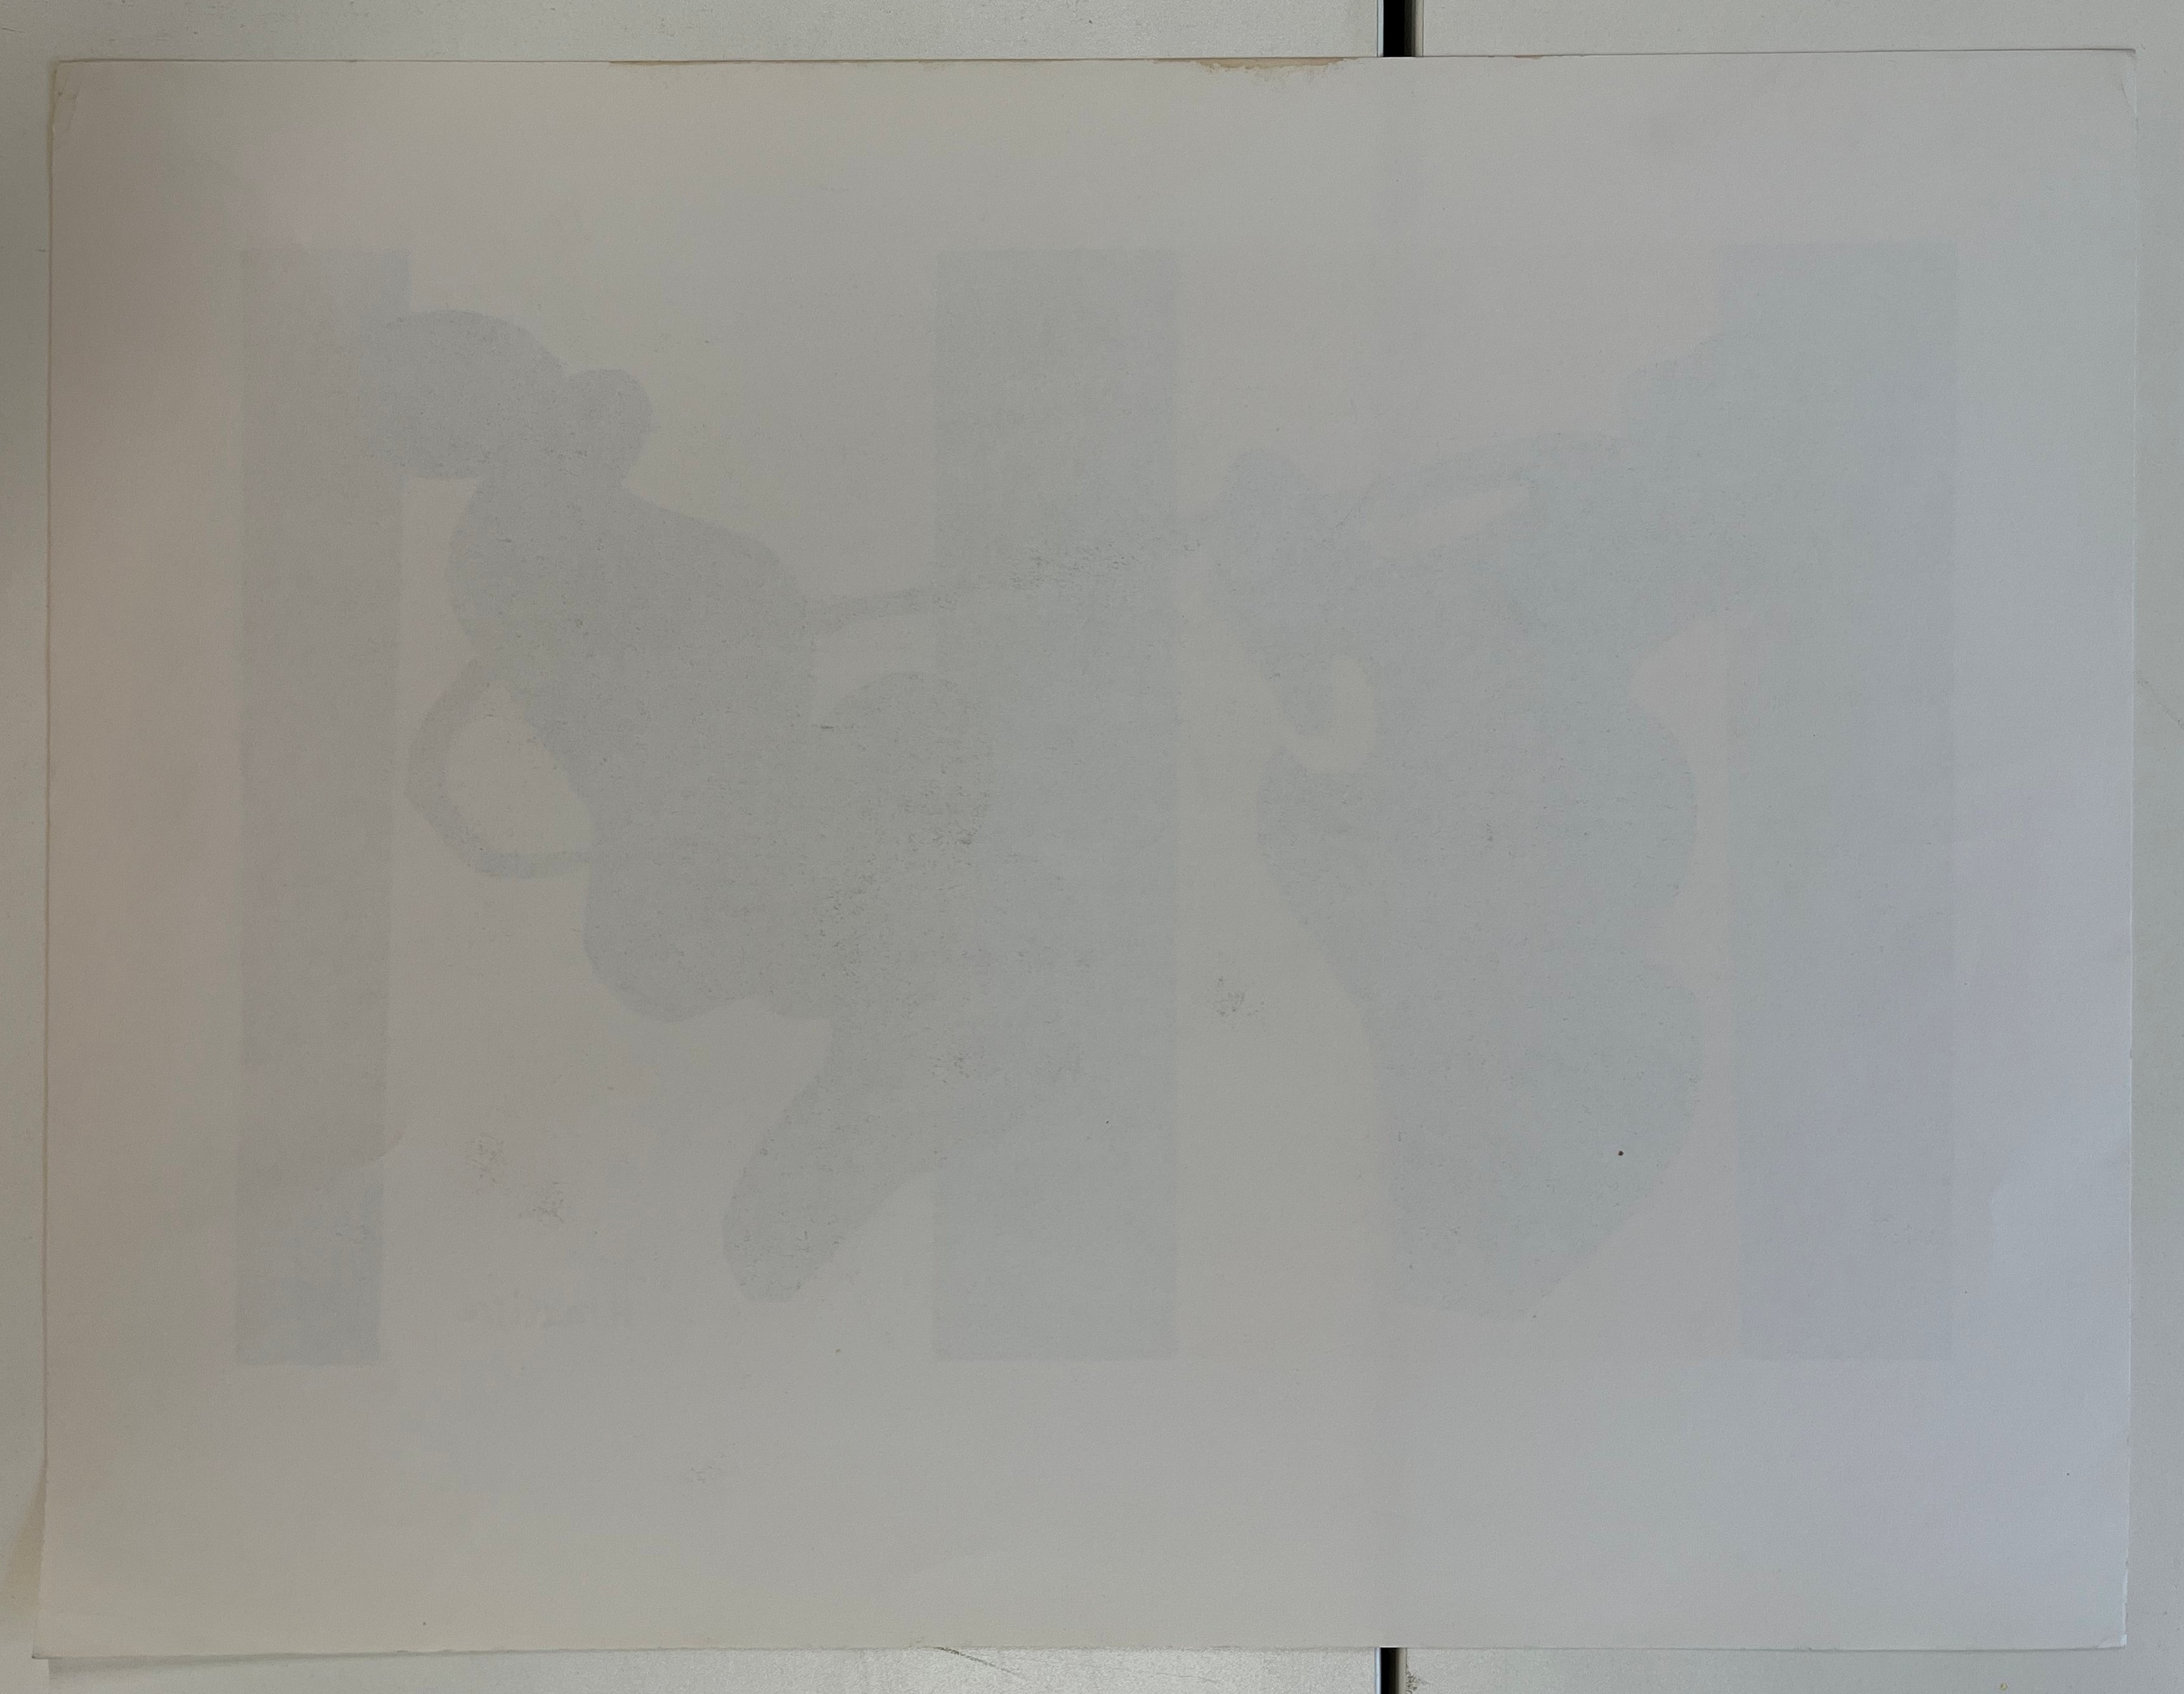 SEVEN VINTAGE LITHOGRAPHS ON PAPER AFTER HENRI MATISSE - Image 8 of 24